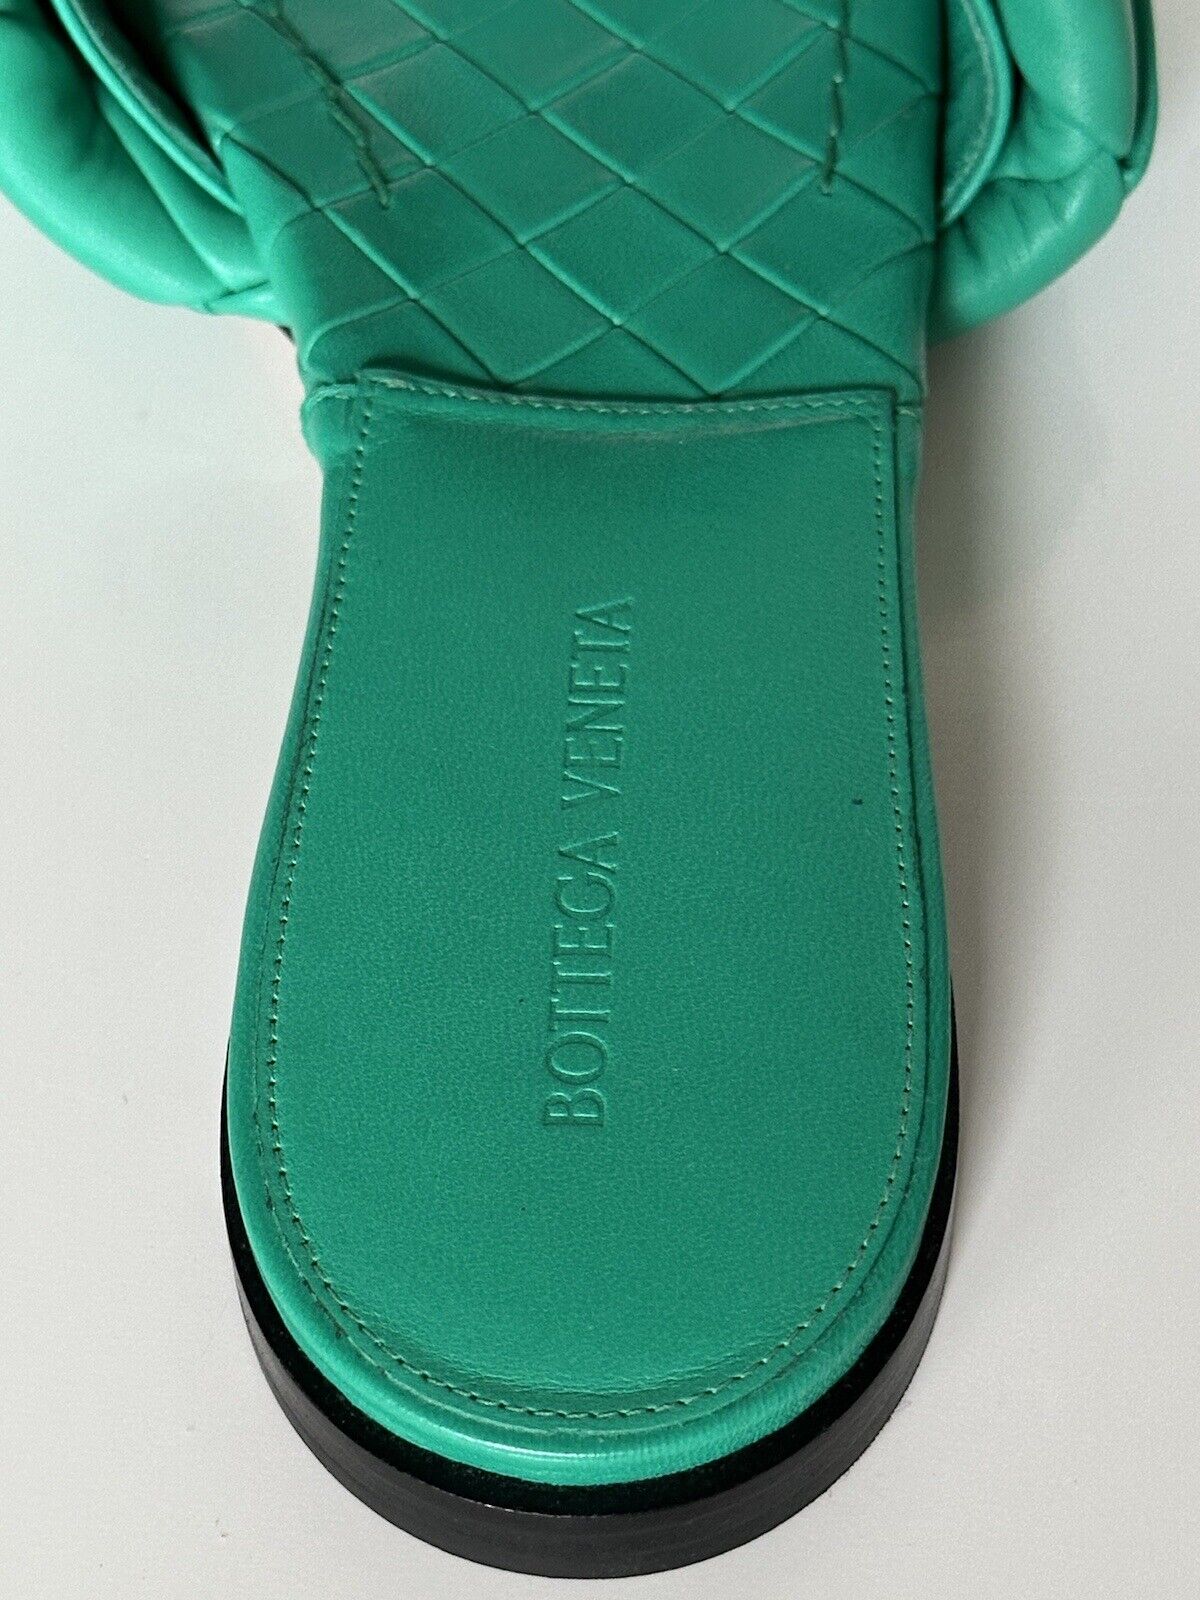 NWT $ 1350 Bottega Veneta Grüne Loden Flache Sandalen Schuhe 7,5 US (37,5 Eu) 608853 